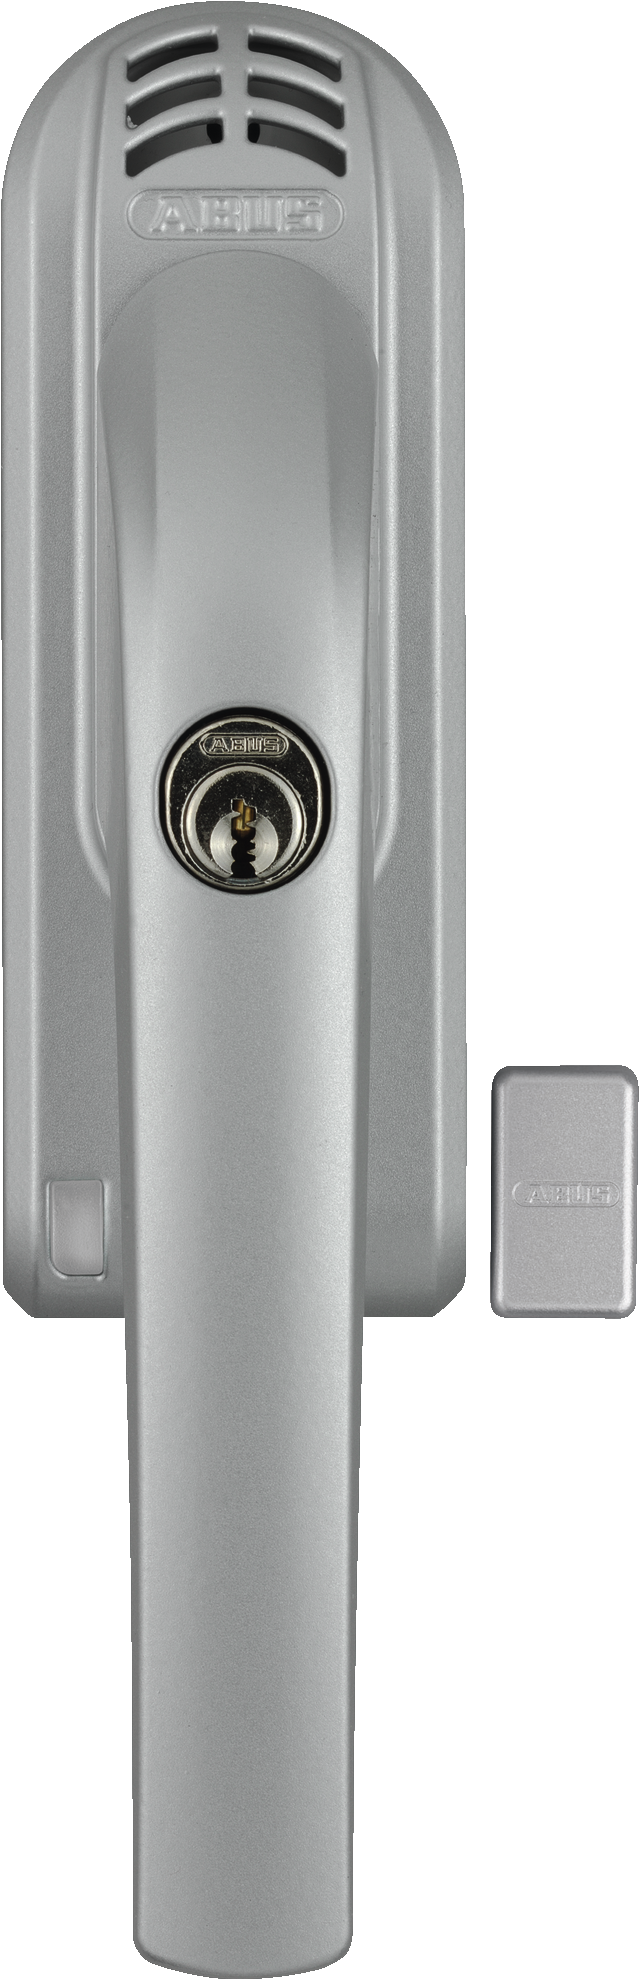 Lockable window handle FG300A S AAL0006